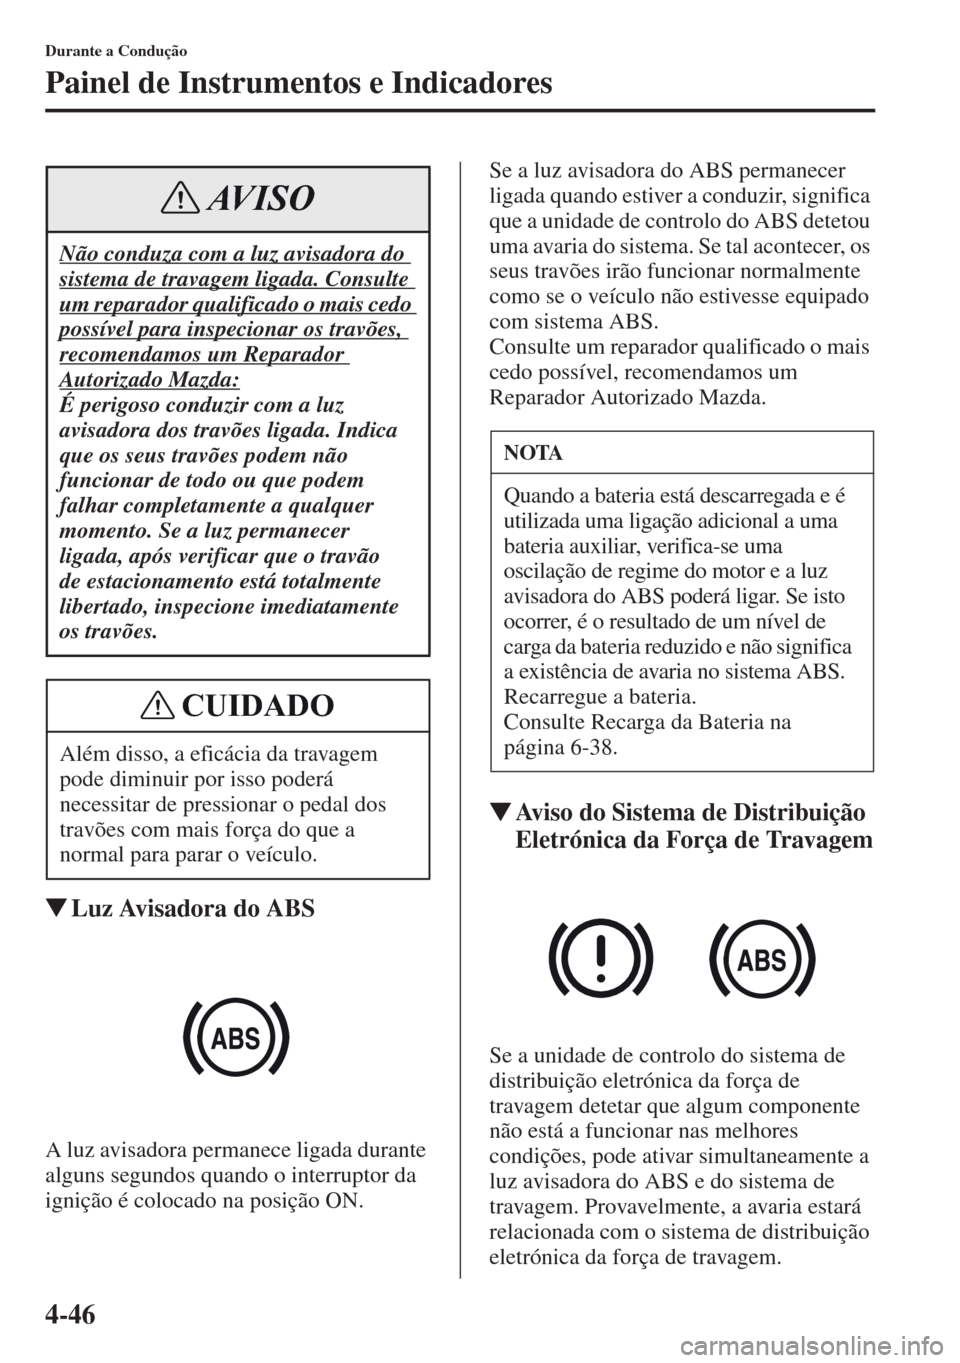 MAZDA MODEL CX-5 2013  Manual do proprietário (in Portuguese) 4-46
Durante a Condução
Painel de Instrumentos e Indicadores
Luz Avisadora do ABS
A luz avisadora permanece ligada durante 
alguns segundos quando o interruptor da 
ignição é colocado na posiç�